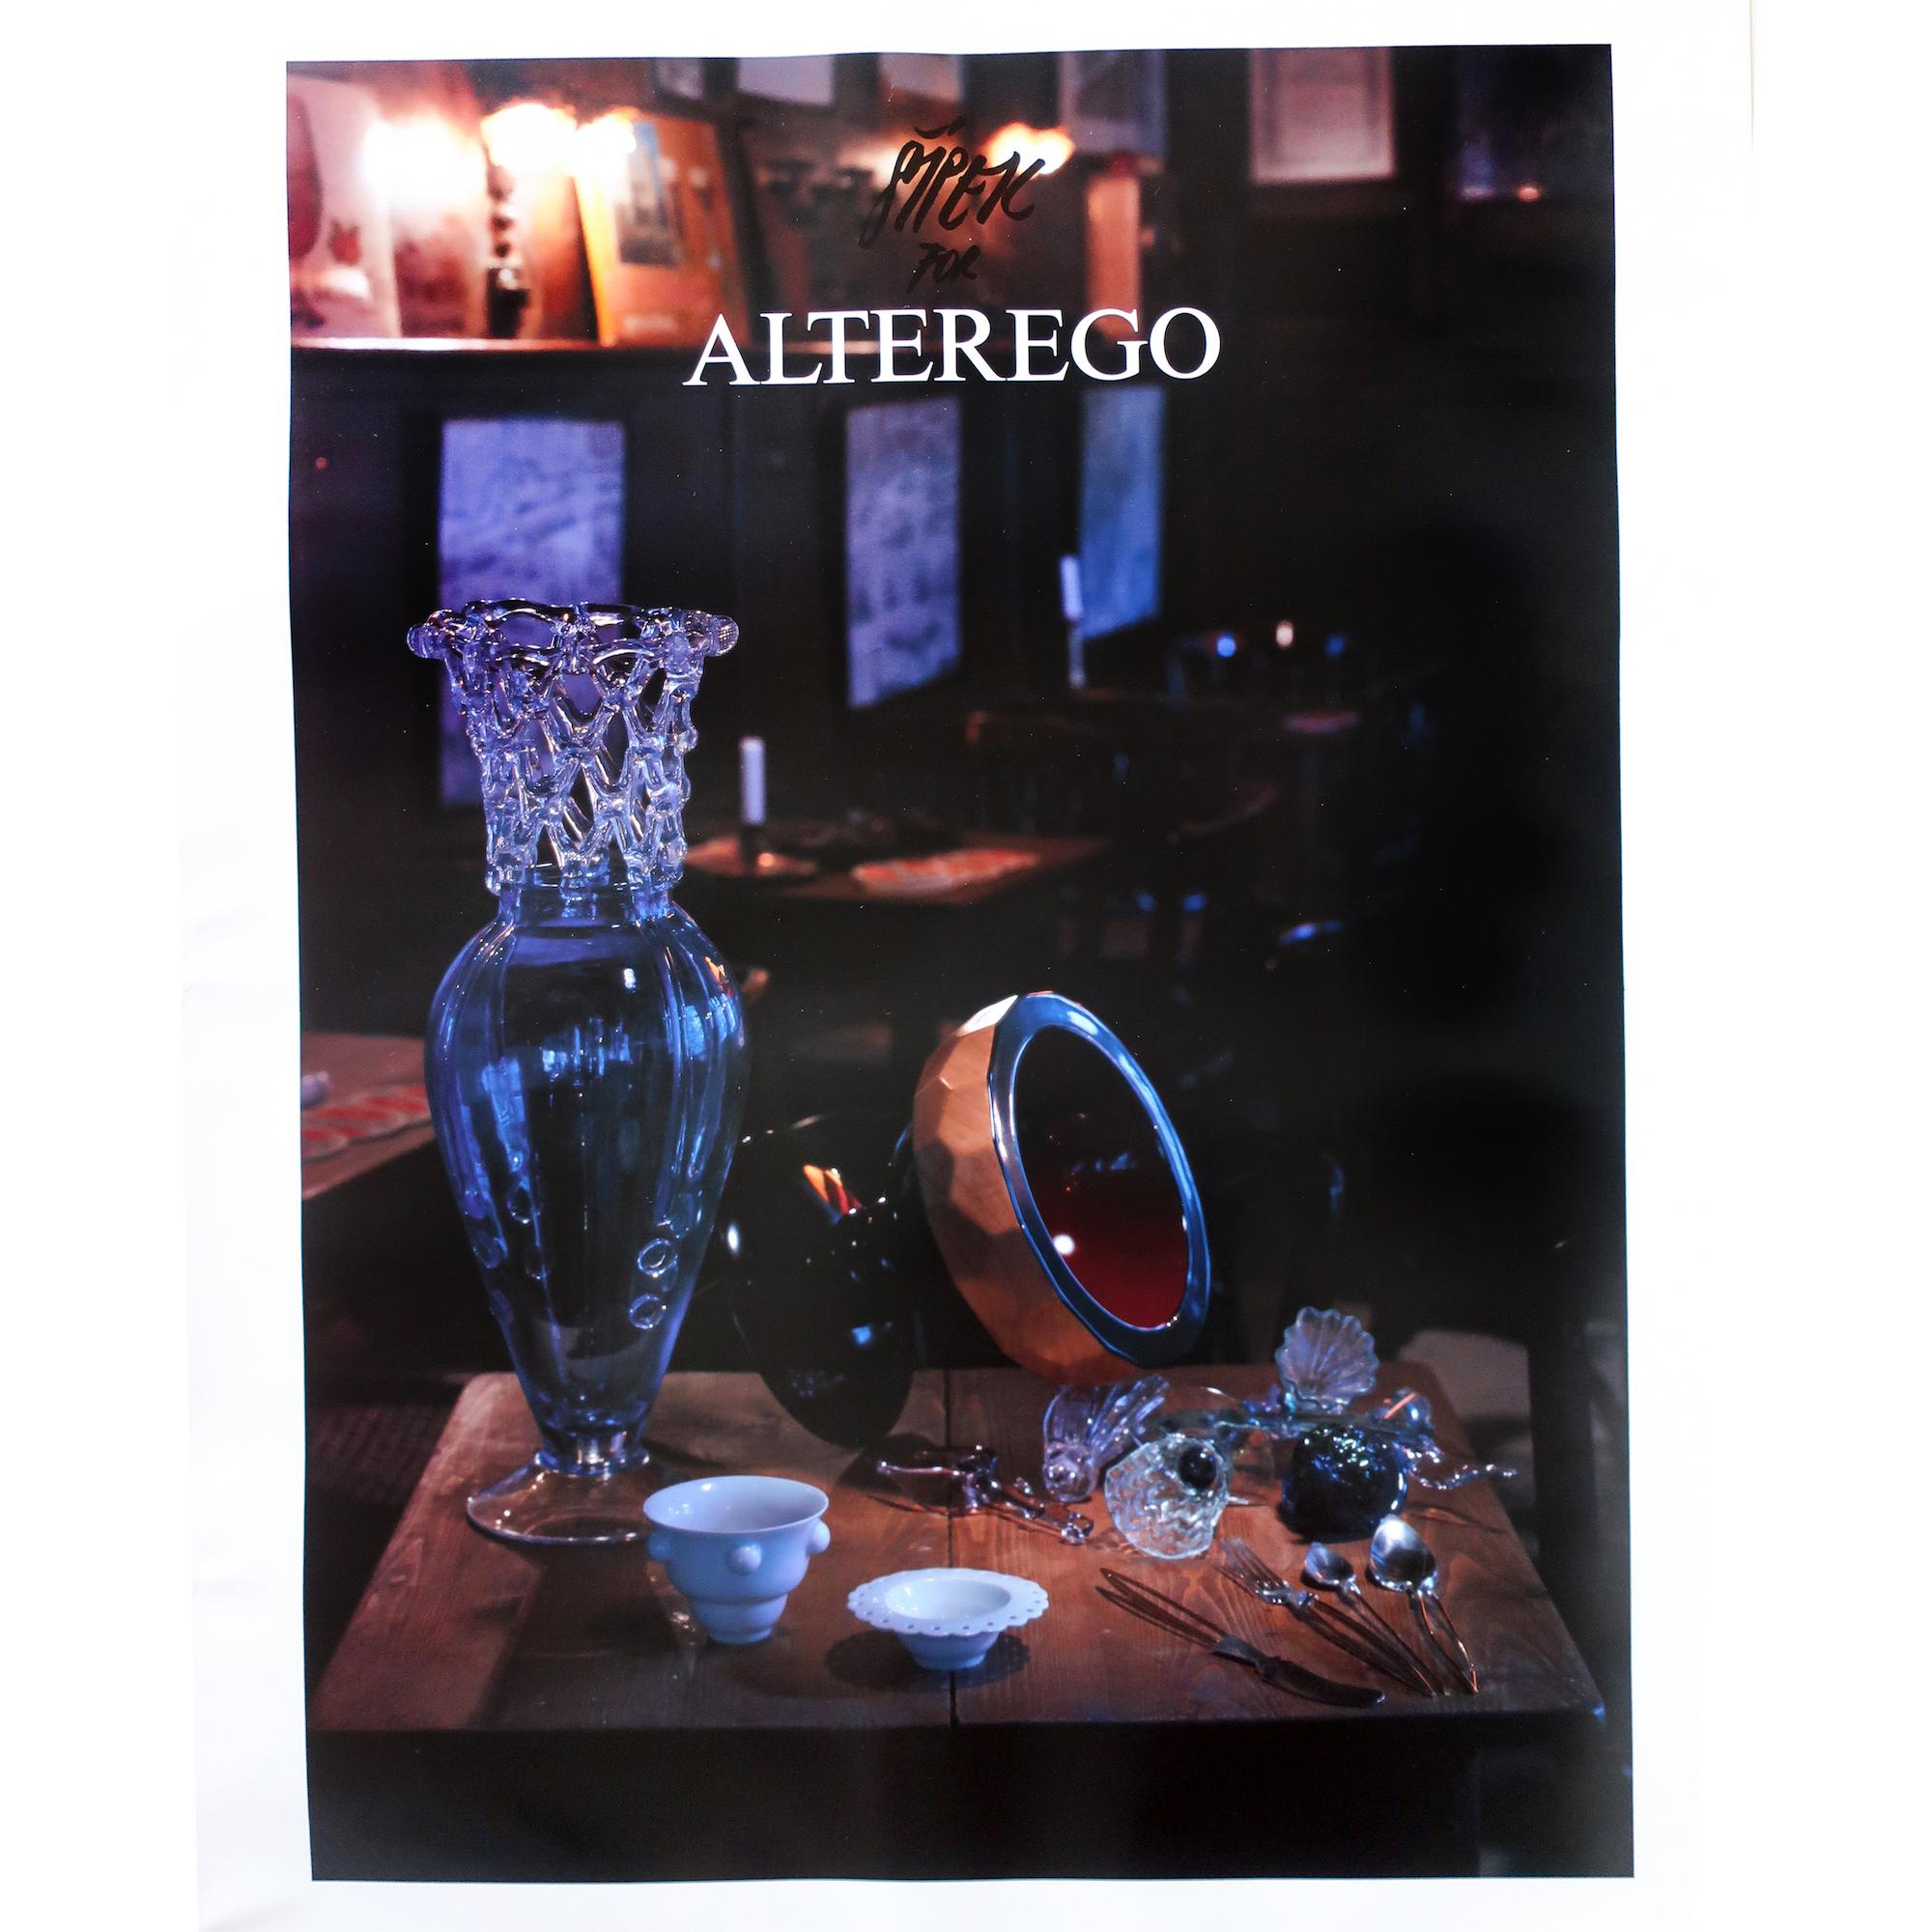 Affiche promotionnelle pour le travail de l'architecte et designer tchèque Borek Sipek avec son studio de design Alterego, qui a produit des œuvres en verre dans les années 1980 et 1990. Présente un certain nombre de pièces conçues par Sipek sur une